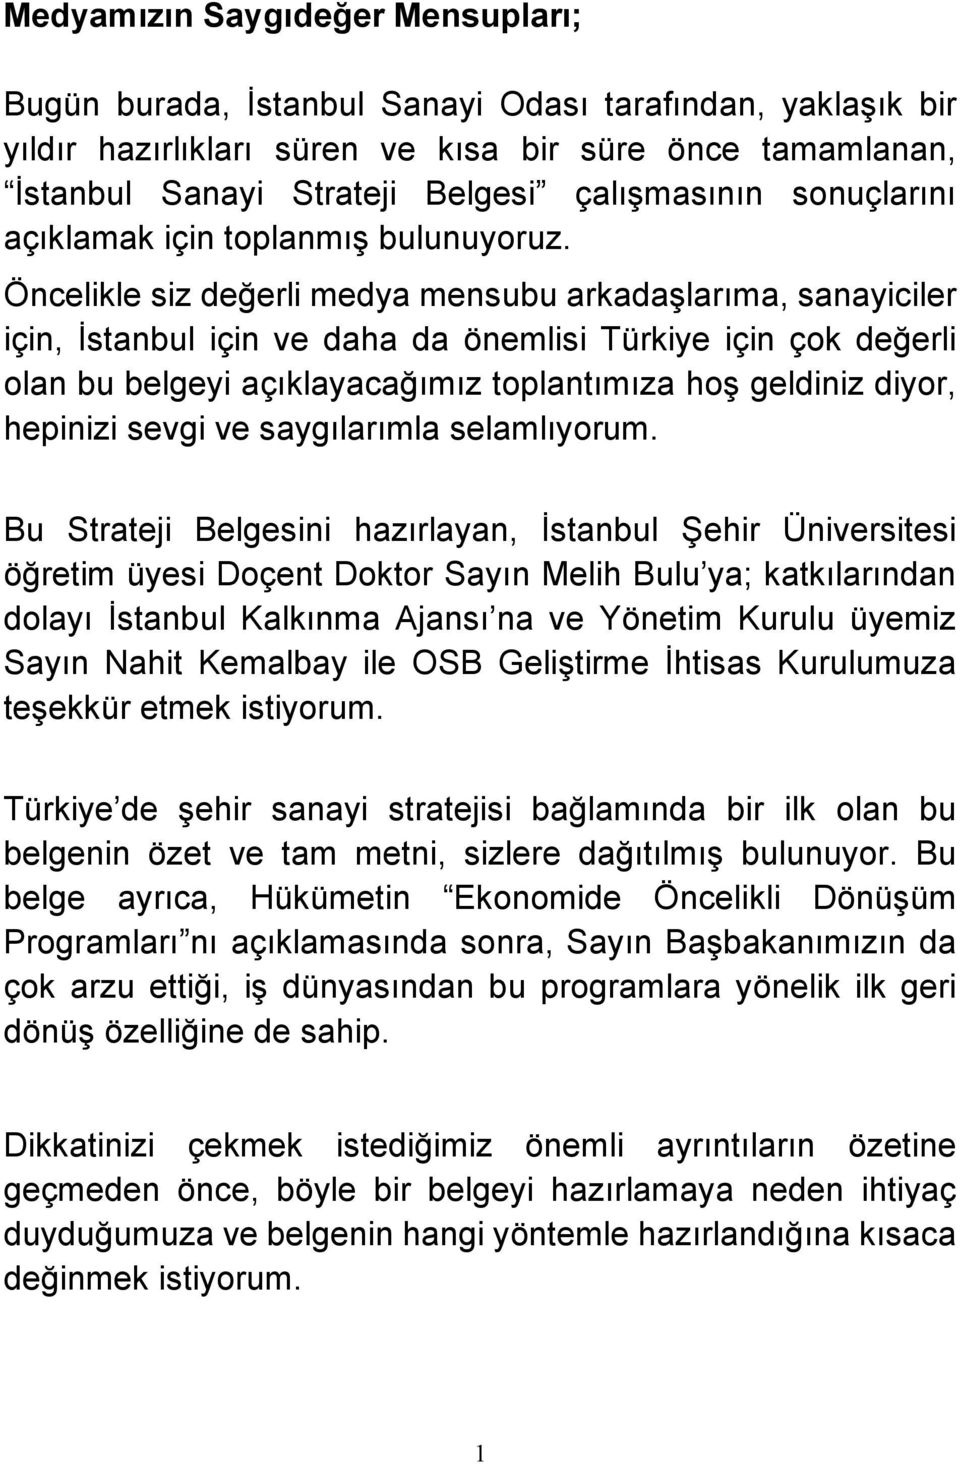 Öncelikle siz değerli medya mensubu arkadaşlarıma, sanayiciler için, İstanbul için ve daha da önemlisi Türkiye için çok değerli olan bu belgeyi açıklayacağımız toplantımıza hoş geldiniz diyor,